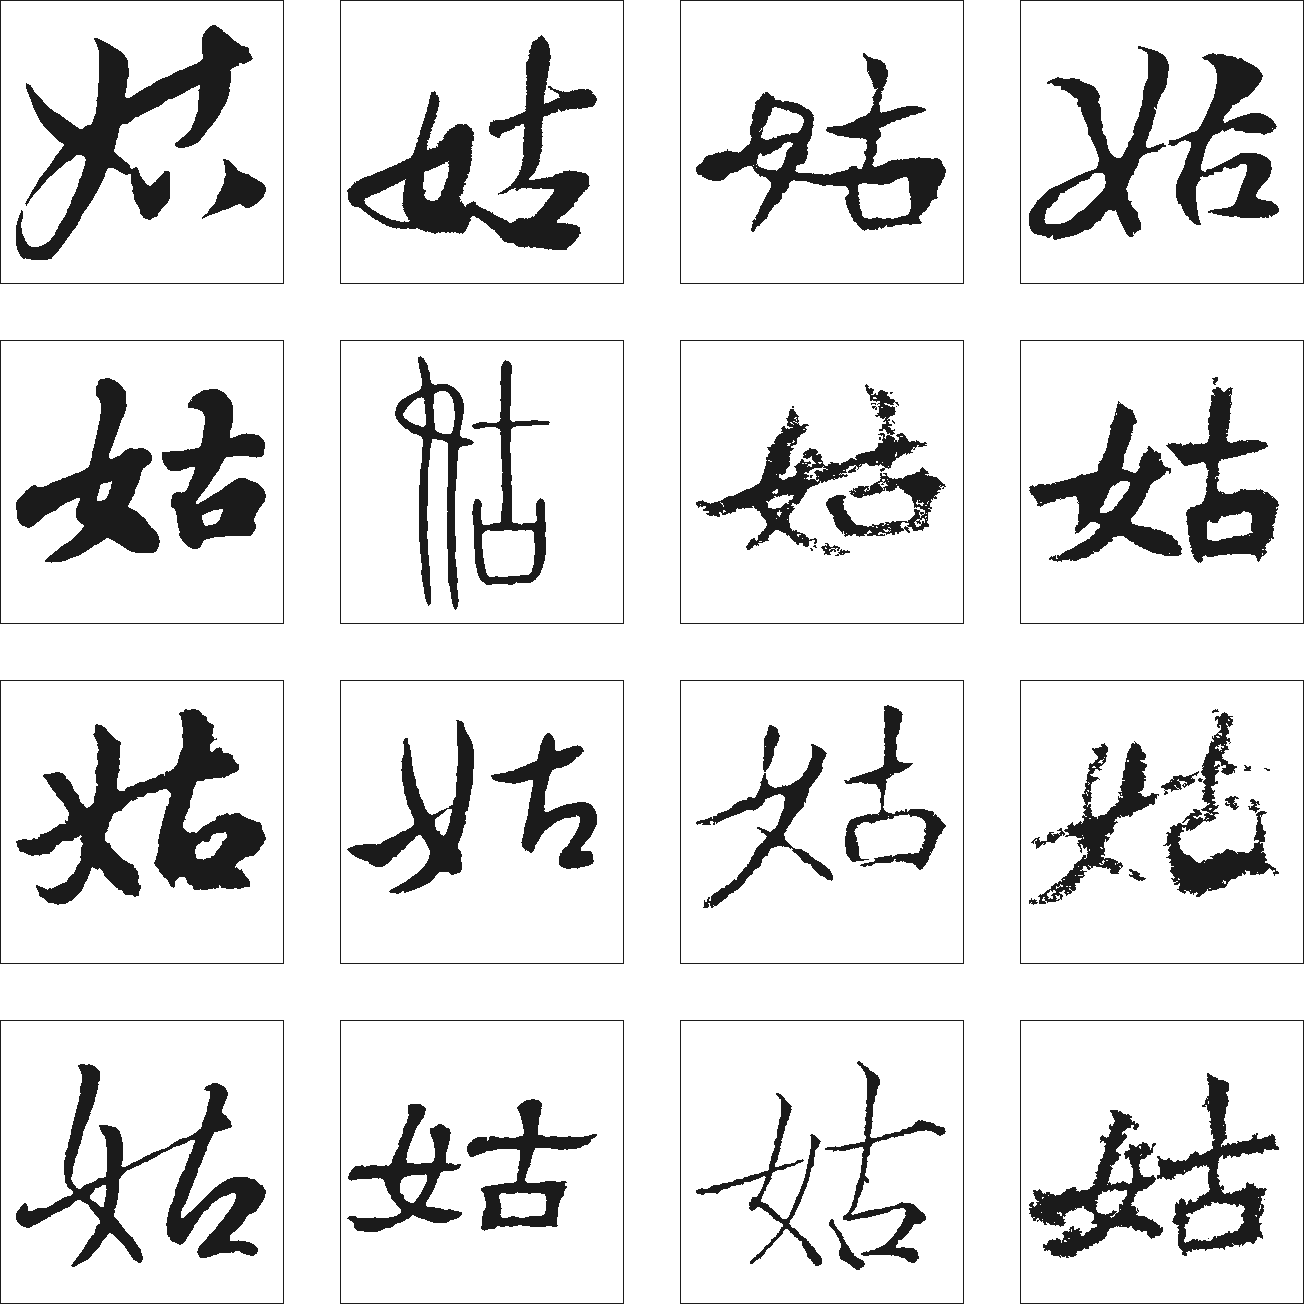 暖色君萌妹体免费字体下载 - 中文字体免费下载尽在字体家